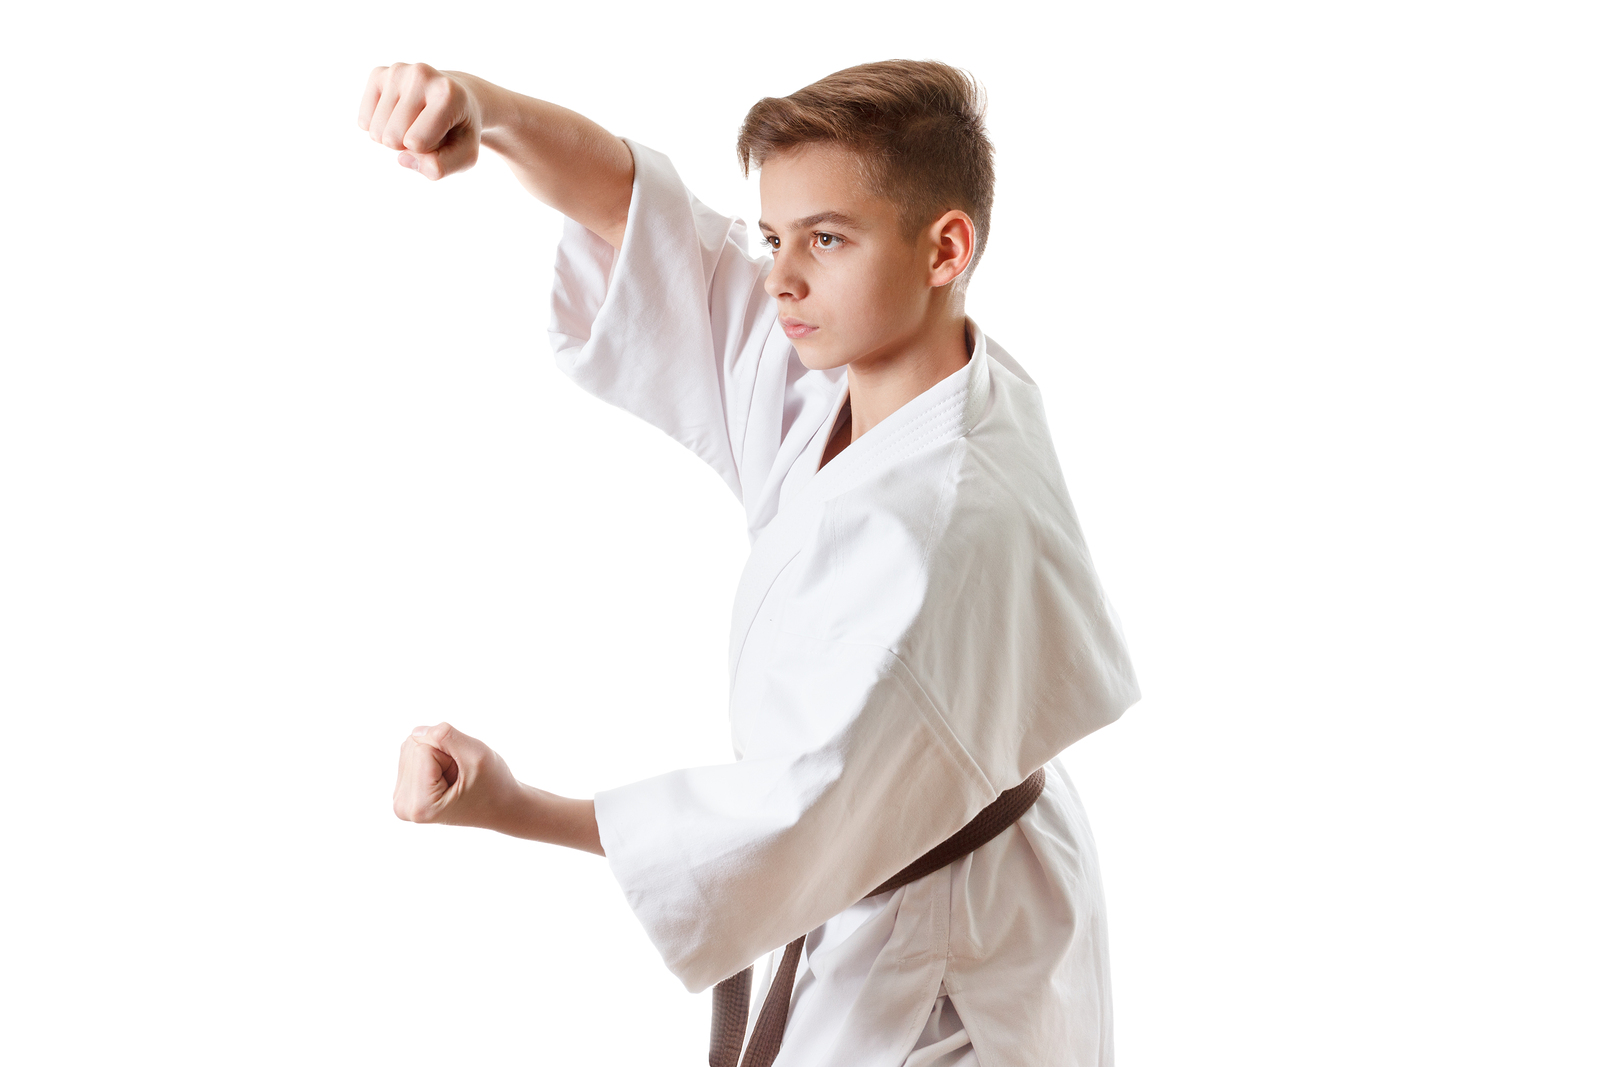 Shotokan Karate Club Villach - Karate und Selbstverteidigung - Karate für Jugendliche